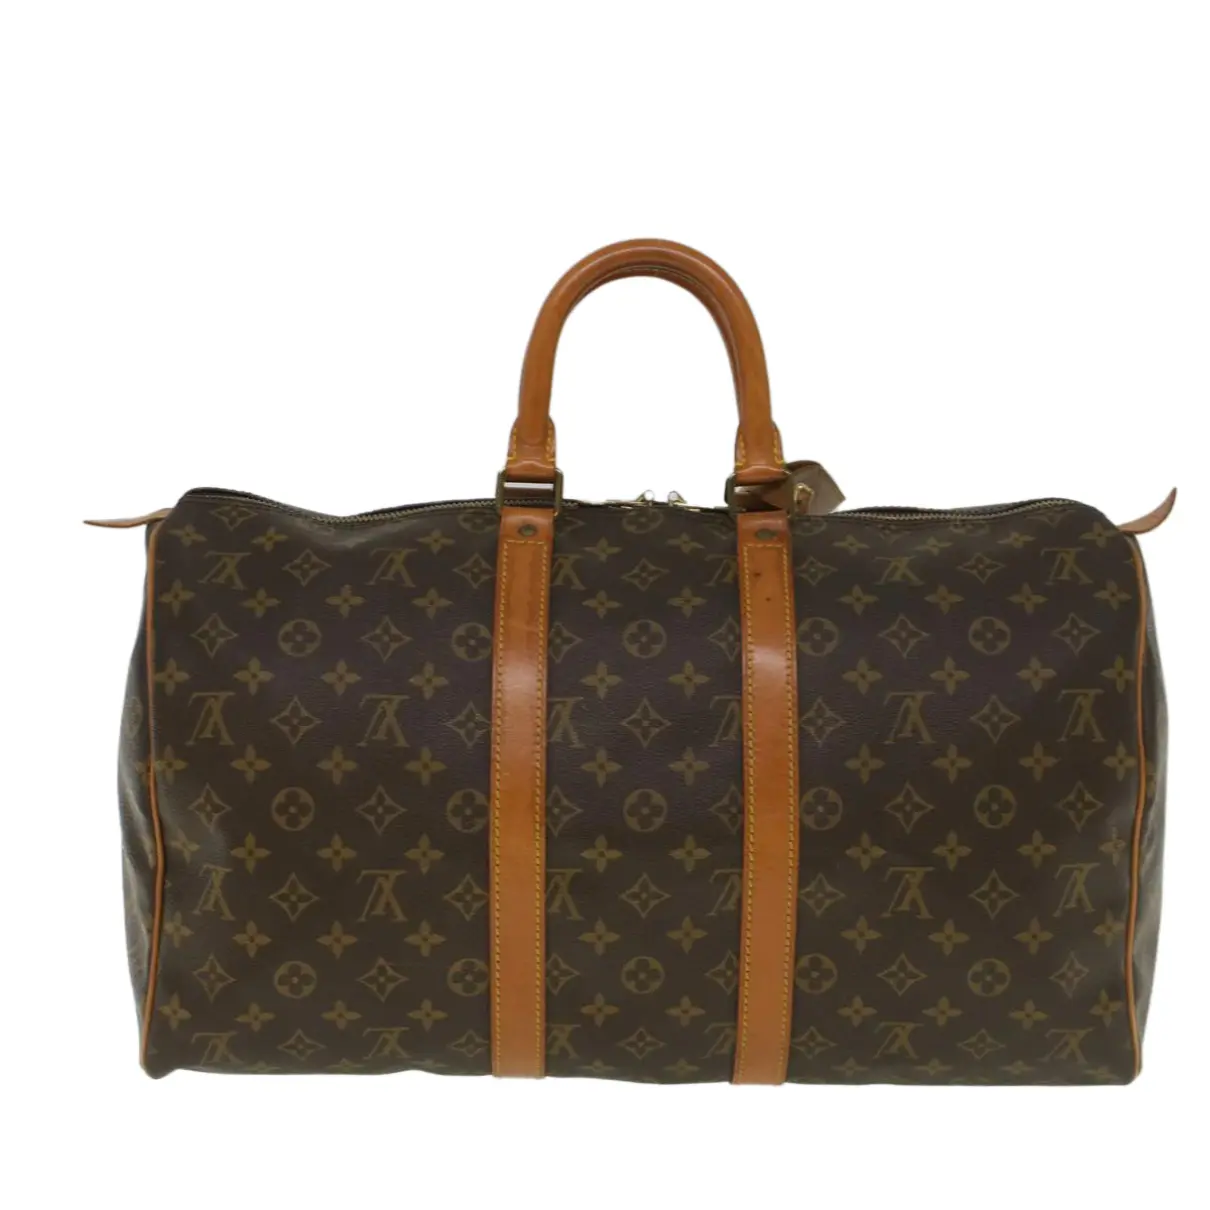 Buy Louis Vuitton Cloth travel bag online - Vintage